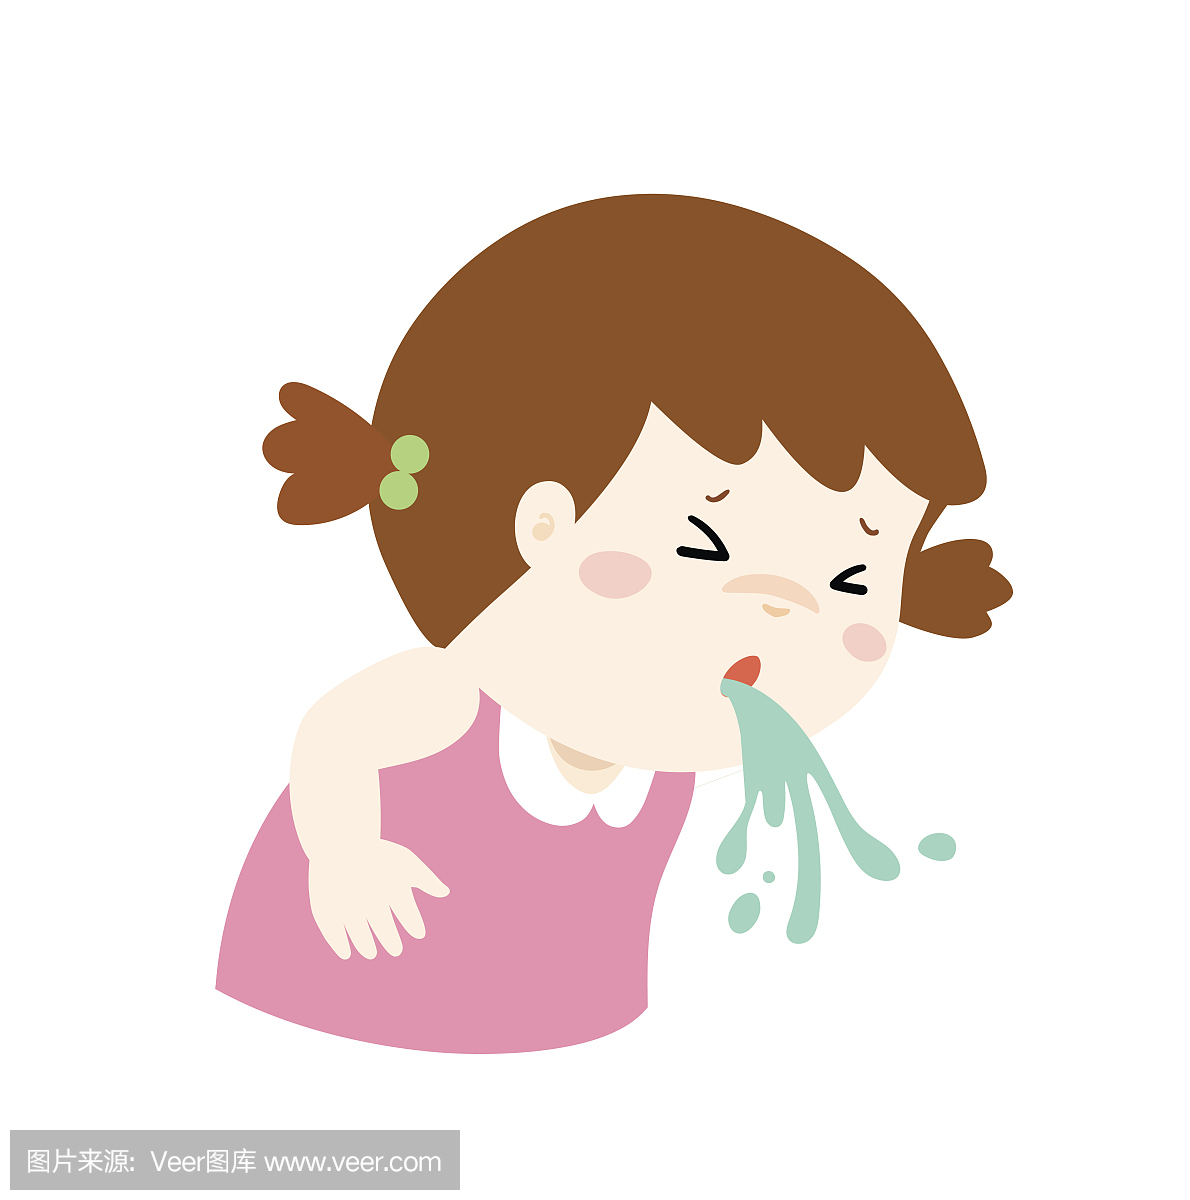 生病的女孩打喷嚏卡通矢量 — 图库矢量图像© Onontour #89640432